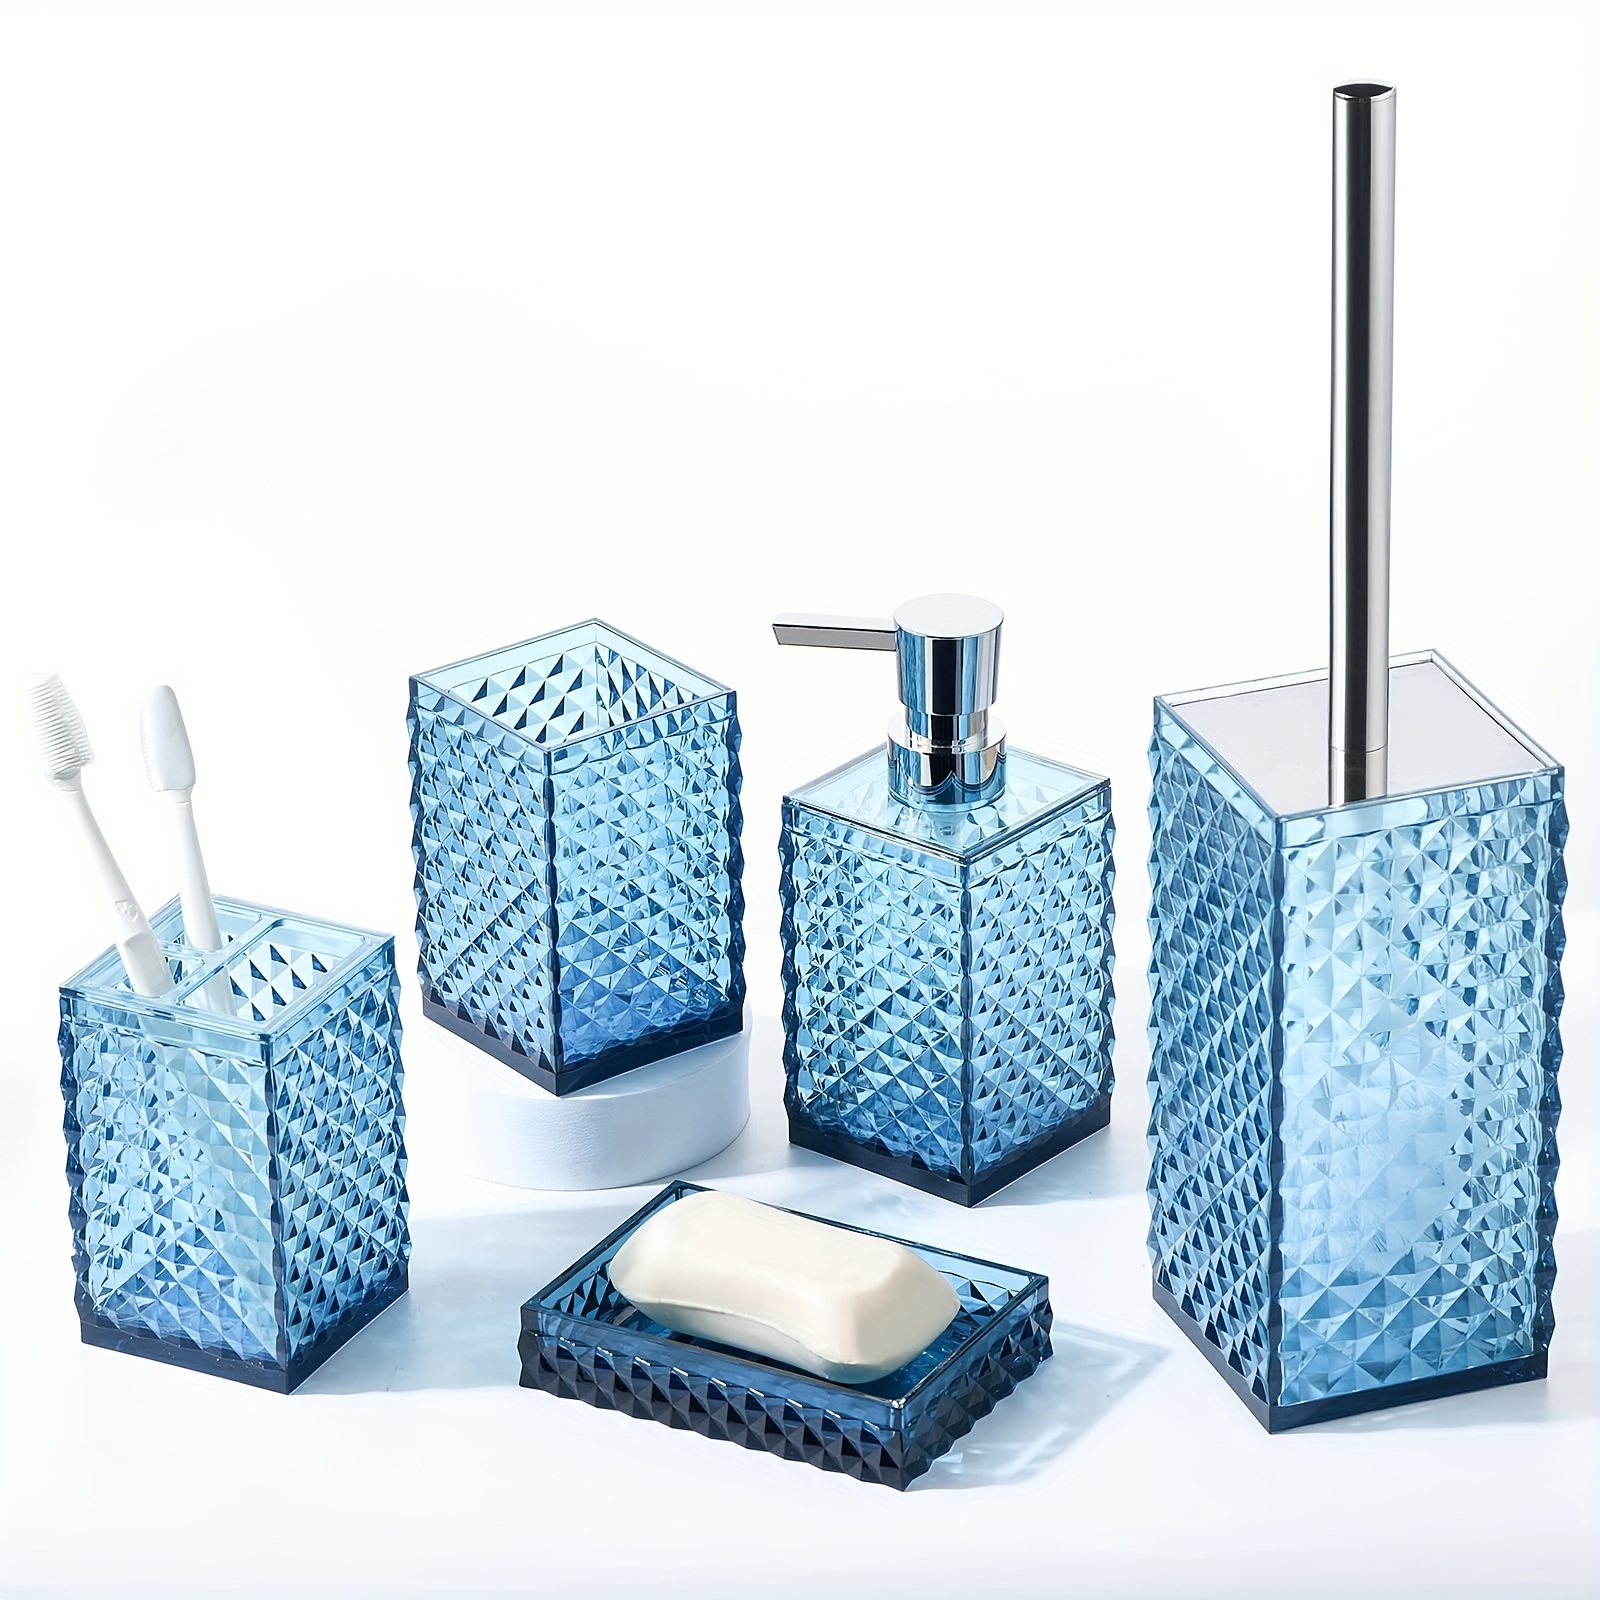 6Pcs Bathroom Accessories Set Toothbrush Holder Soap Dispenser Toilet Brush  Gift